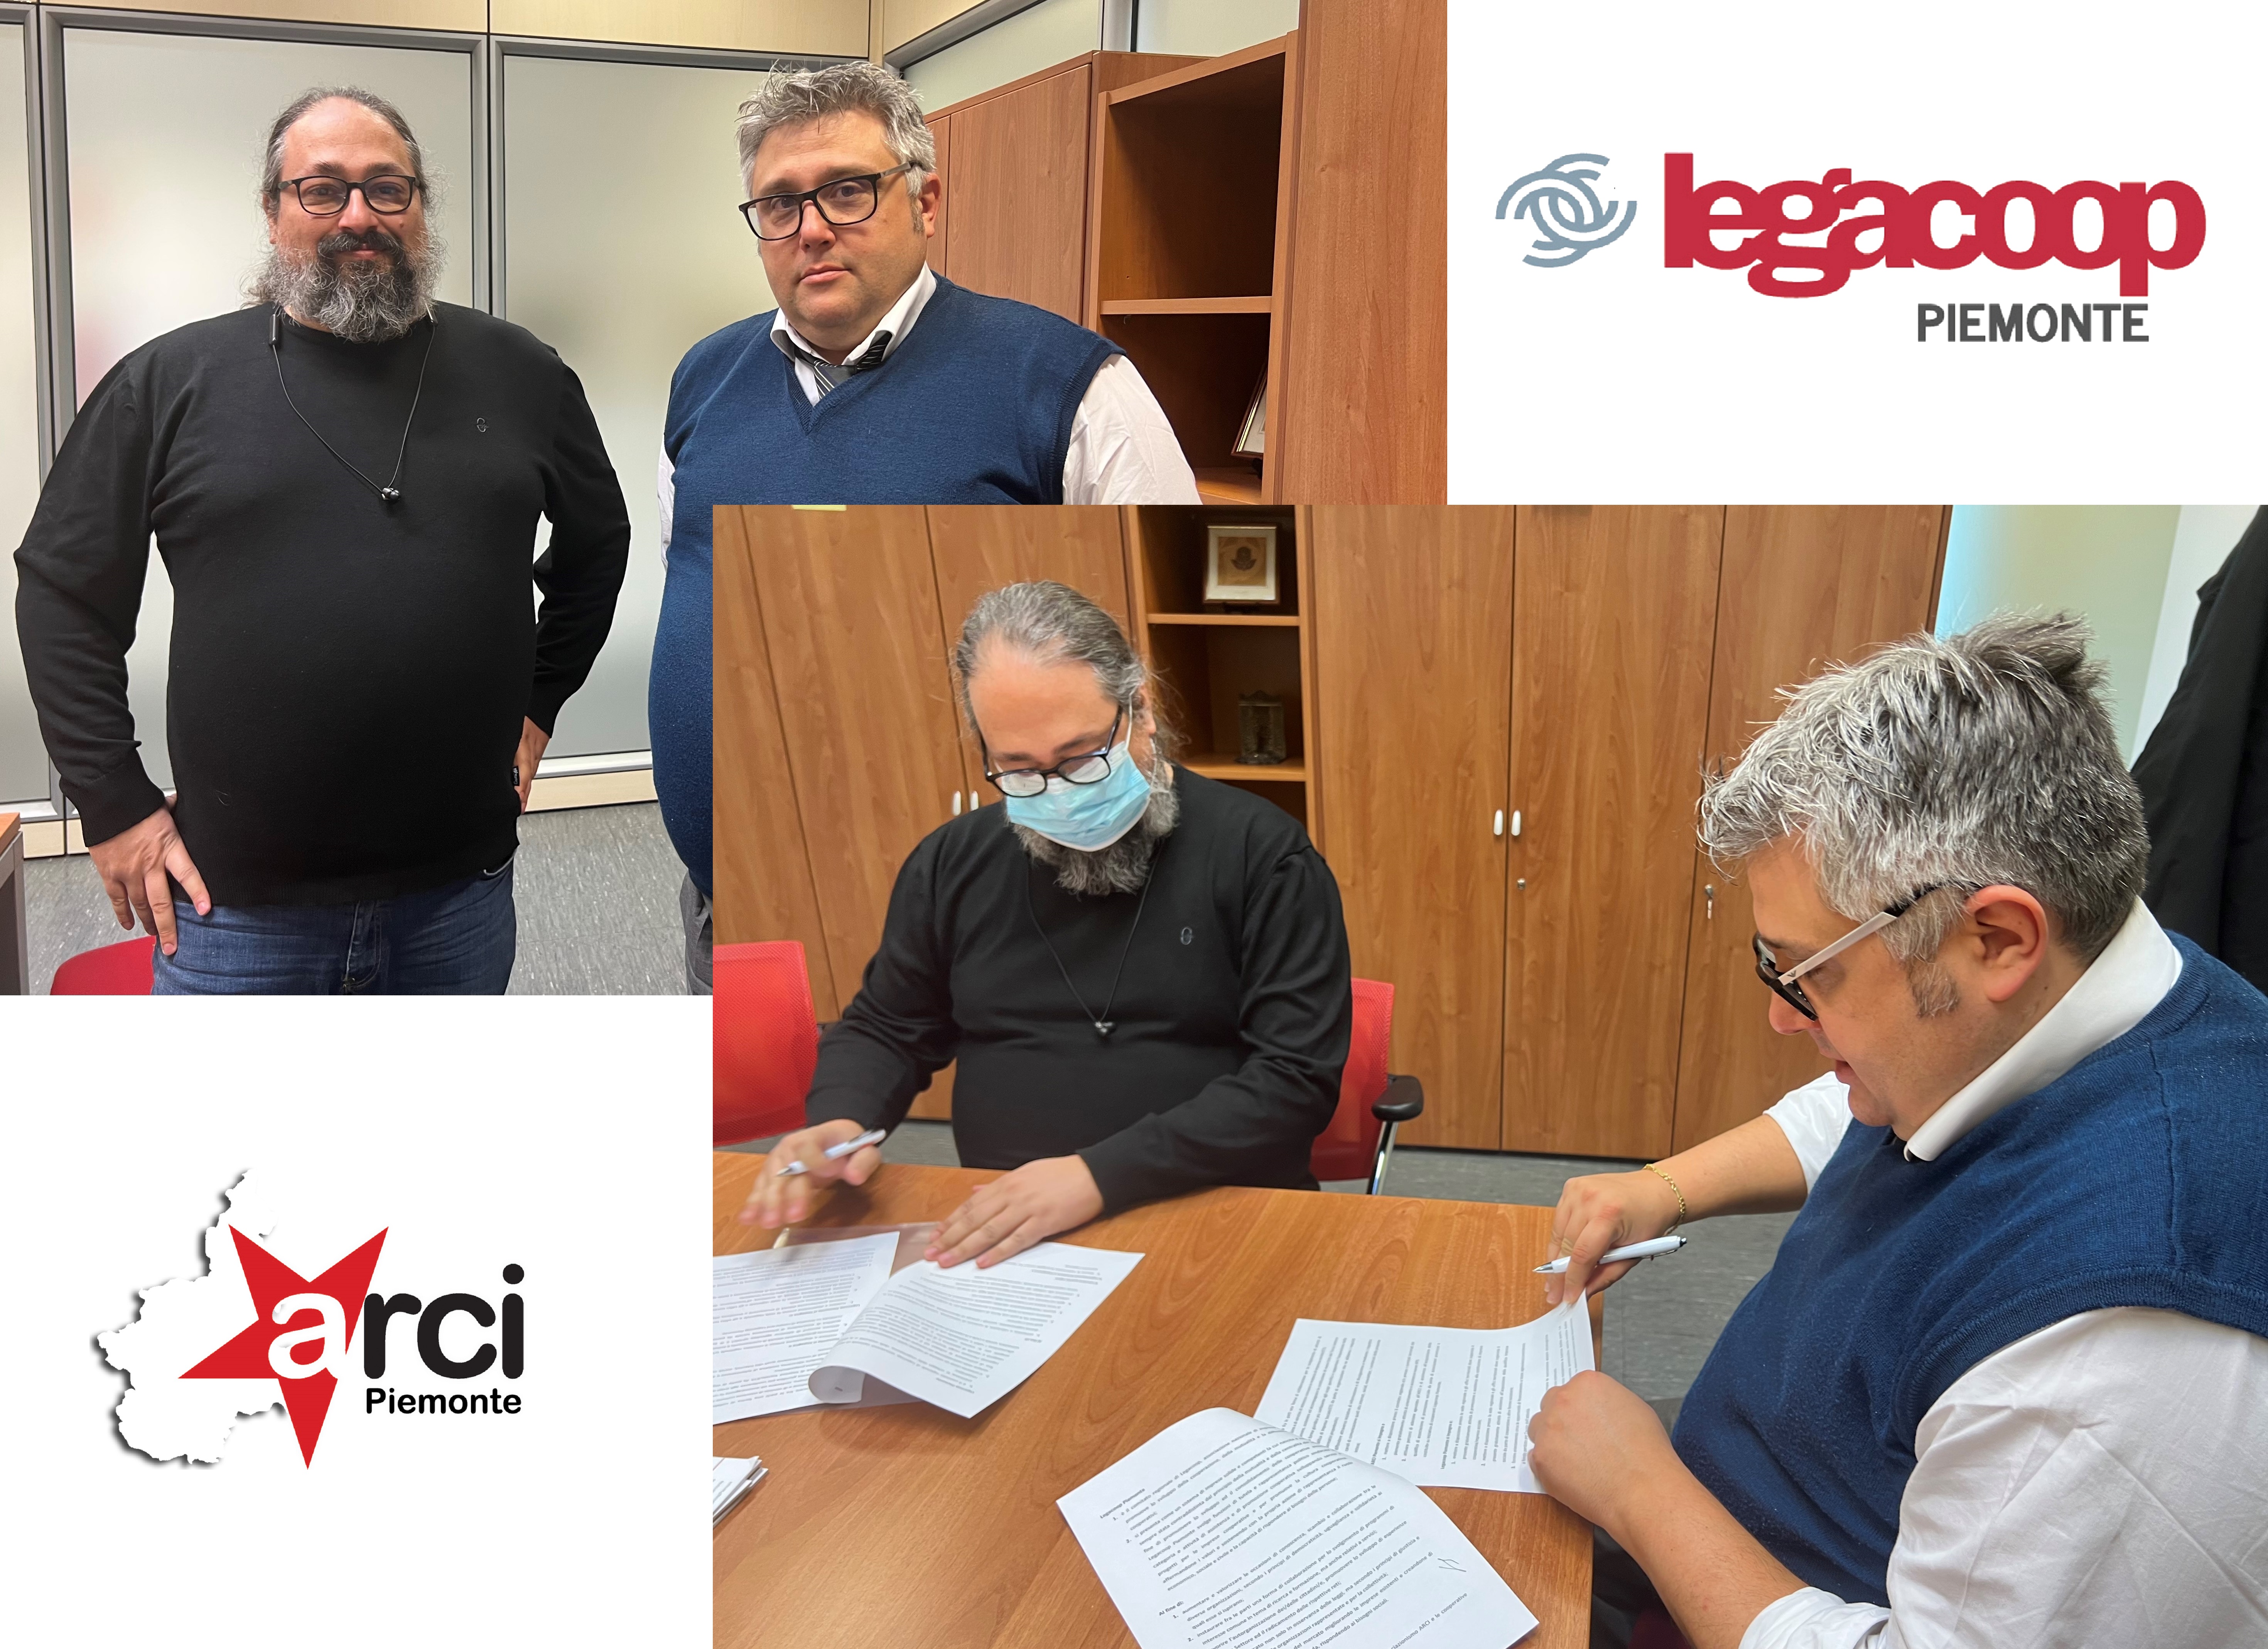 Legacoop Piemonte e Arci Piemonte firmano protocollo d'Intesa per la promozione e collaborazione tra enti del Terzo Settore